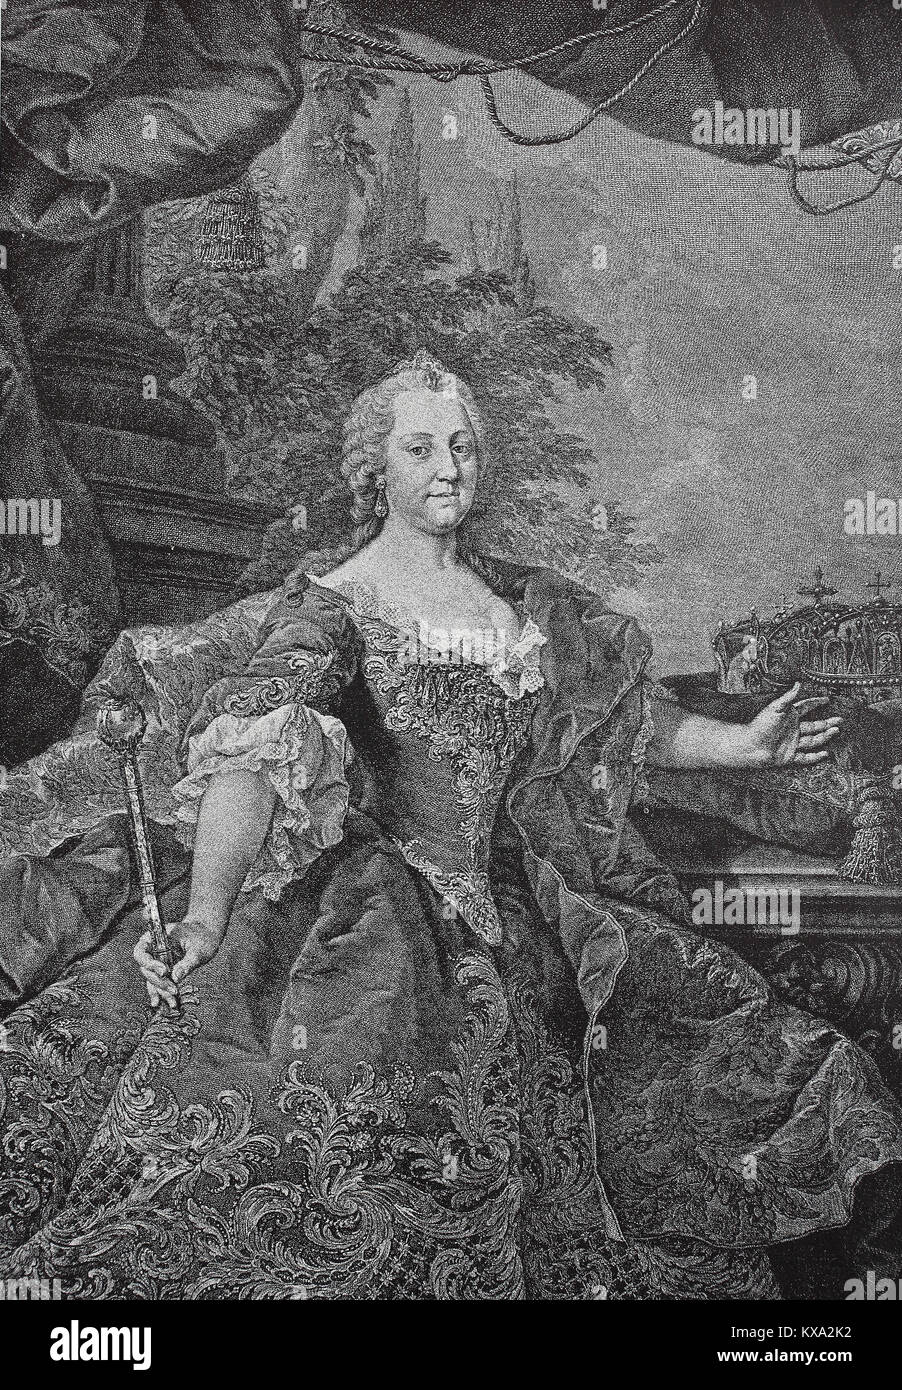 Maria Theresa Walburga Amalia Christina, 13 mai 1717 - 29 novembre 1780, a été la seule femme chef de la Habsburg dominions et la dernière de la maison de Habsbourg. Elle était le souverain d'Autriche, la Hongrie, la Croatie, la Bohême, la Transylvanie, Mantoue, Milan, Lodomeria et la Galice, les Pays-Bas autrichiens et Parme. Par mariage, elle était la duchesse de Lorraine, Grande duchesse de Toscane et de l'Impératrice du Saint Empire Romain, l'amélioration numérique reproduction à partir d'un original gravure sur bois ou de l'illustration à partir de l'année 1880 Banque D'Images